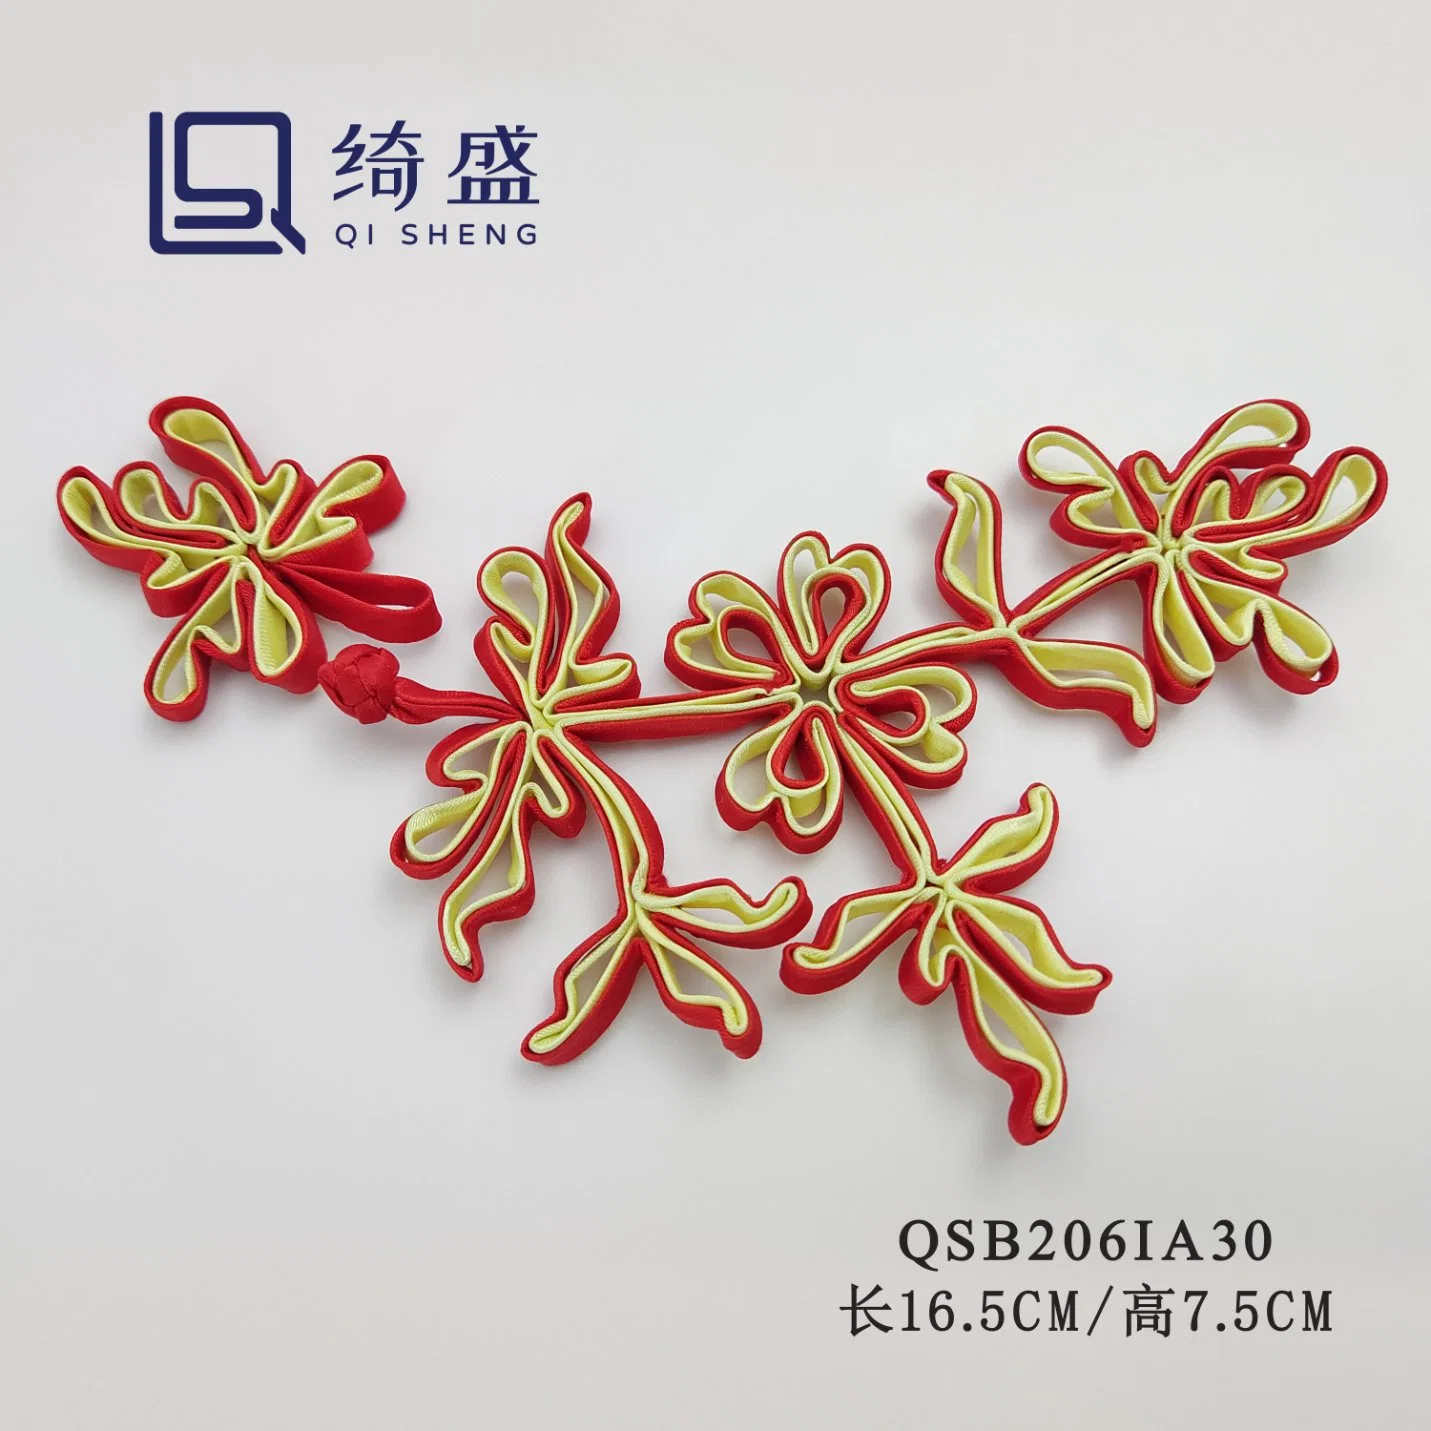 Hochwertige Chinesische Stil Kleidung Tasten / Chinesische Knoten Taste / Formen Und Farben können angepasst werden